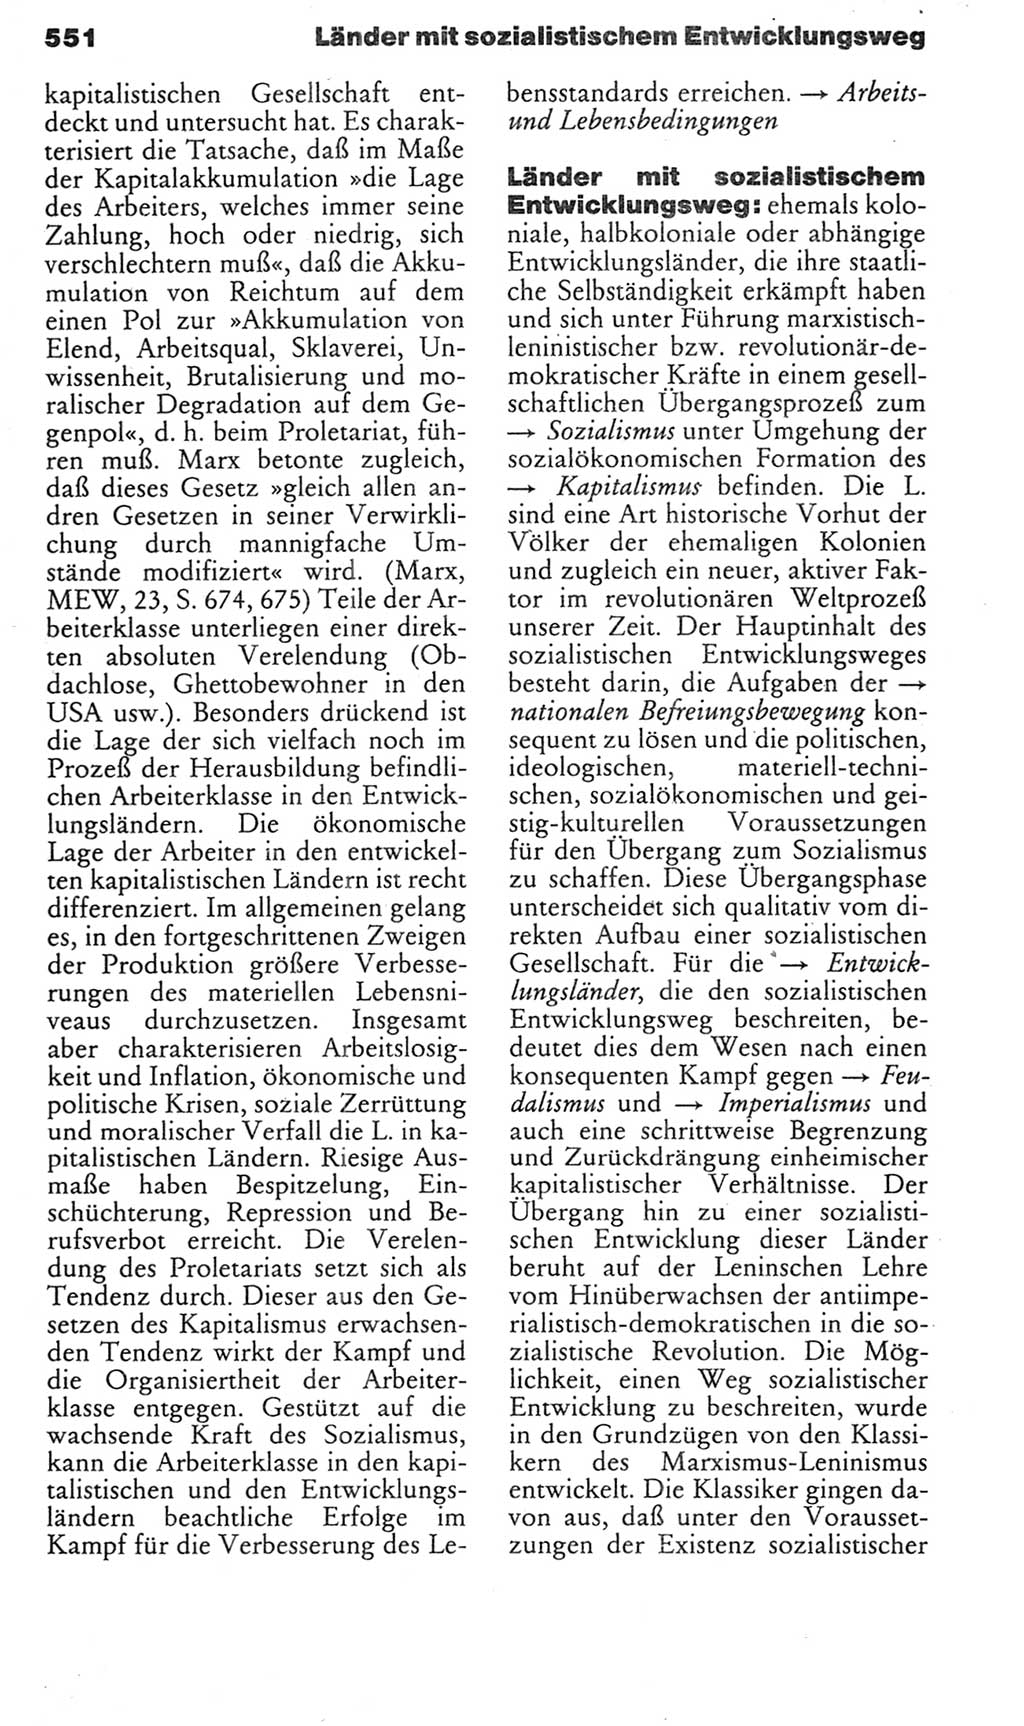 Kleines politisches Wörterbuch [Deutsche Demokratische Republik (DDR)] 1985, Seite 551 (Kl. pol. Wb. DDR 1985, S. 551)